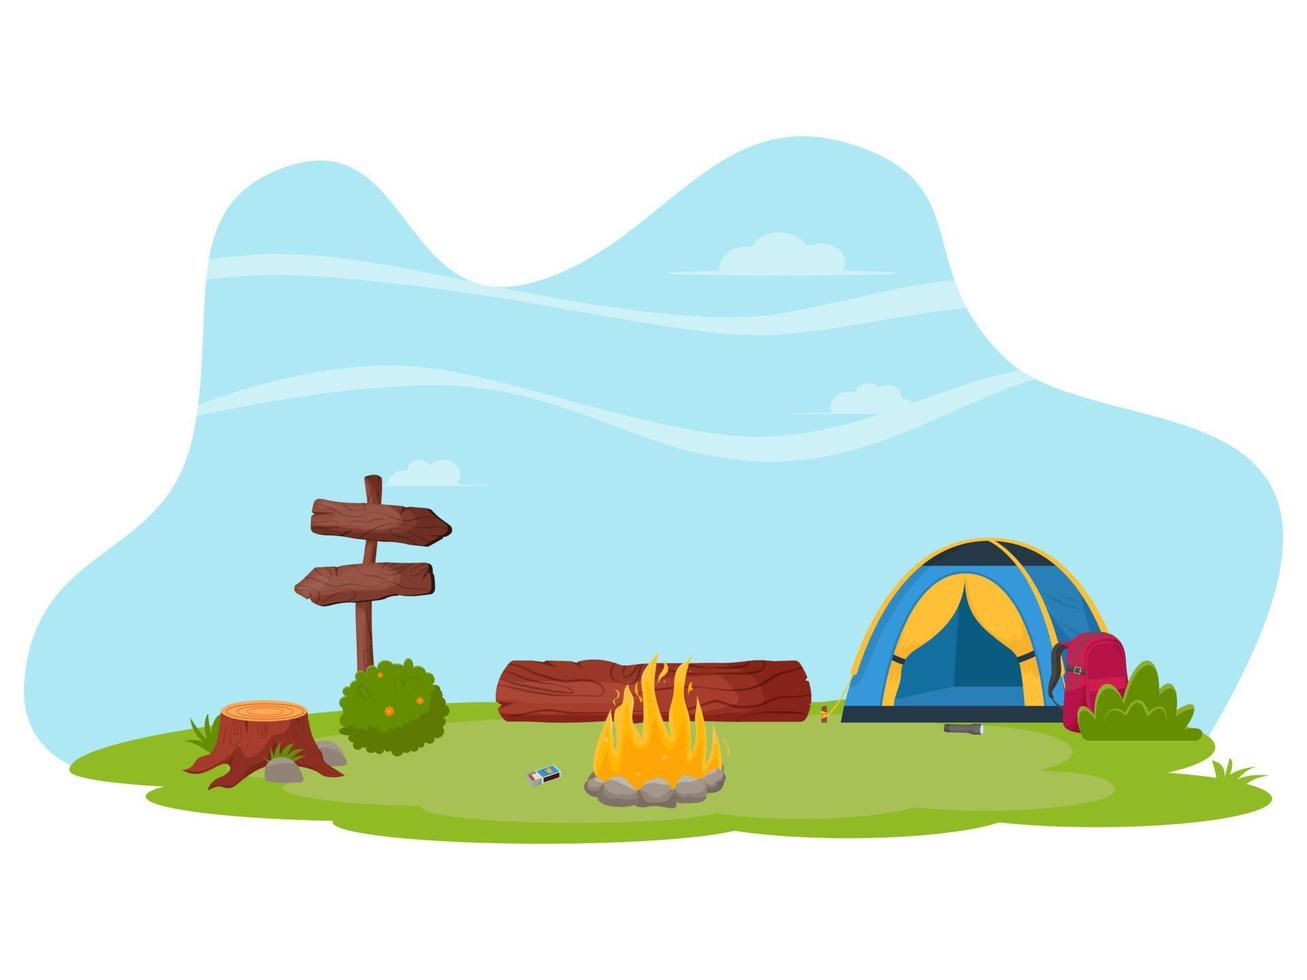 paisaje de verano en el bosque. camping de verano, senderismo, camper, concepto de tiempo de aventura. ilustración de vector plano para cartel, pancarta, volante